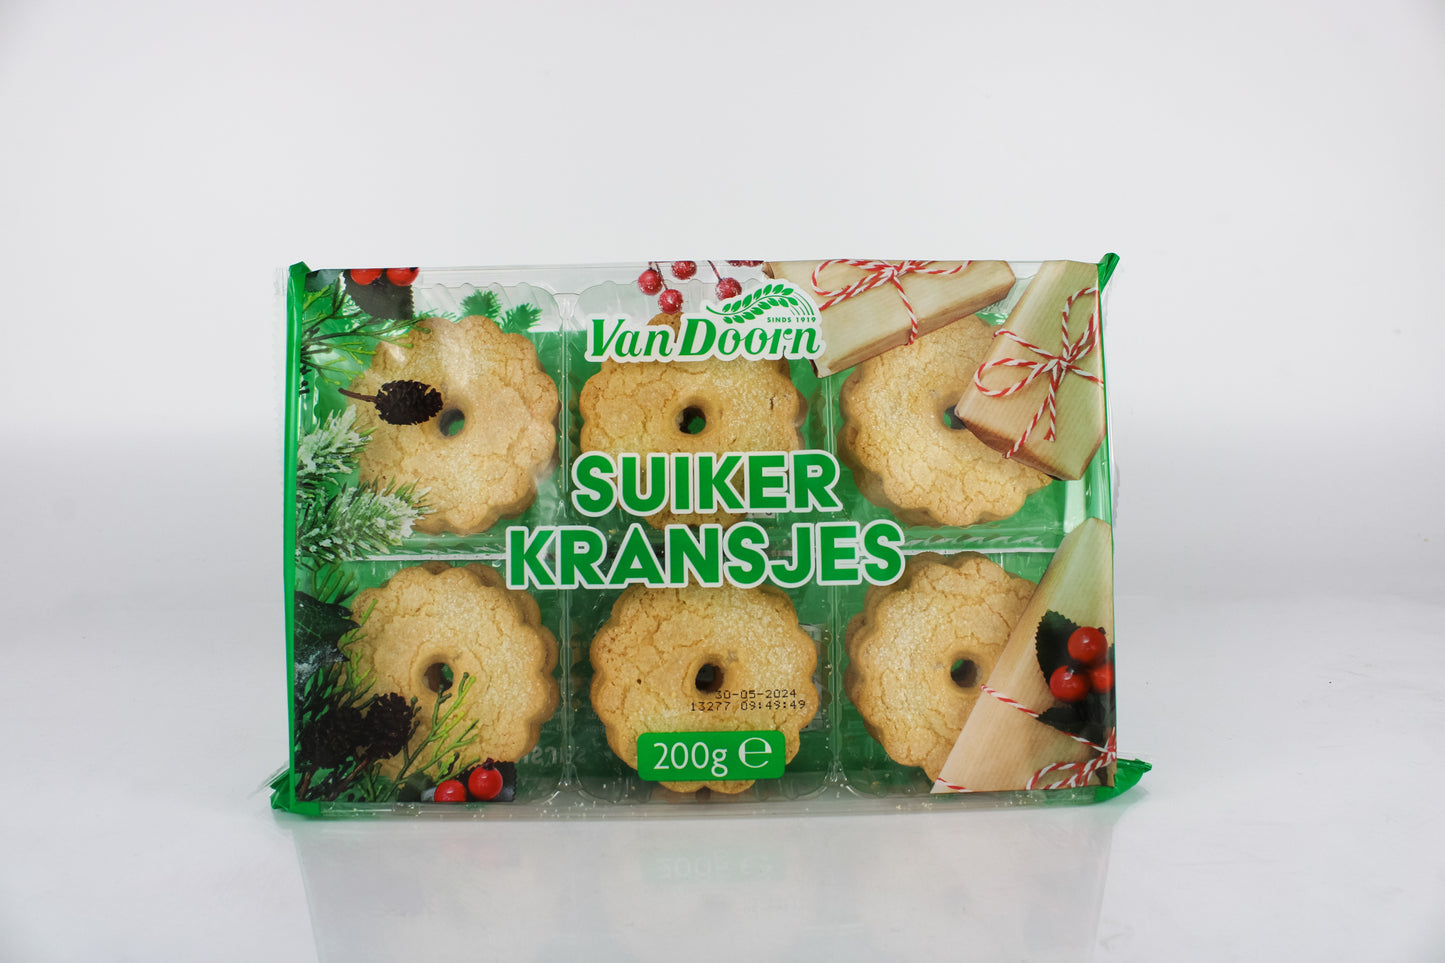 Van Doorn Sugar Wreath Cookies (Suikerkransjes)